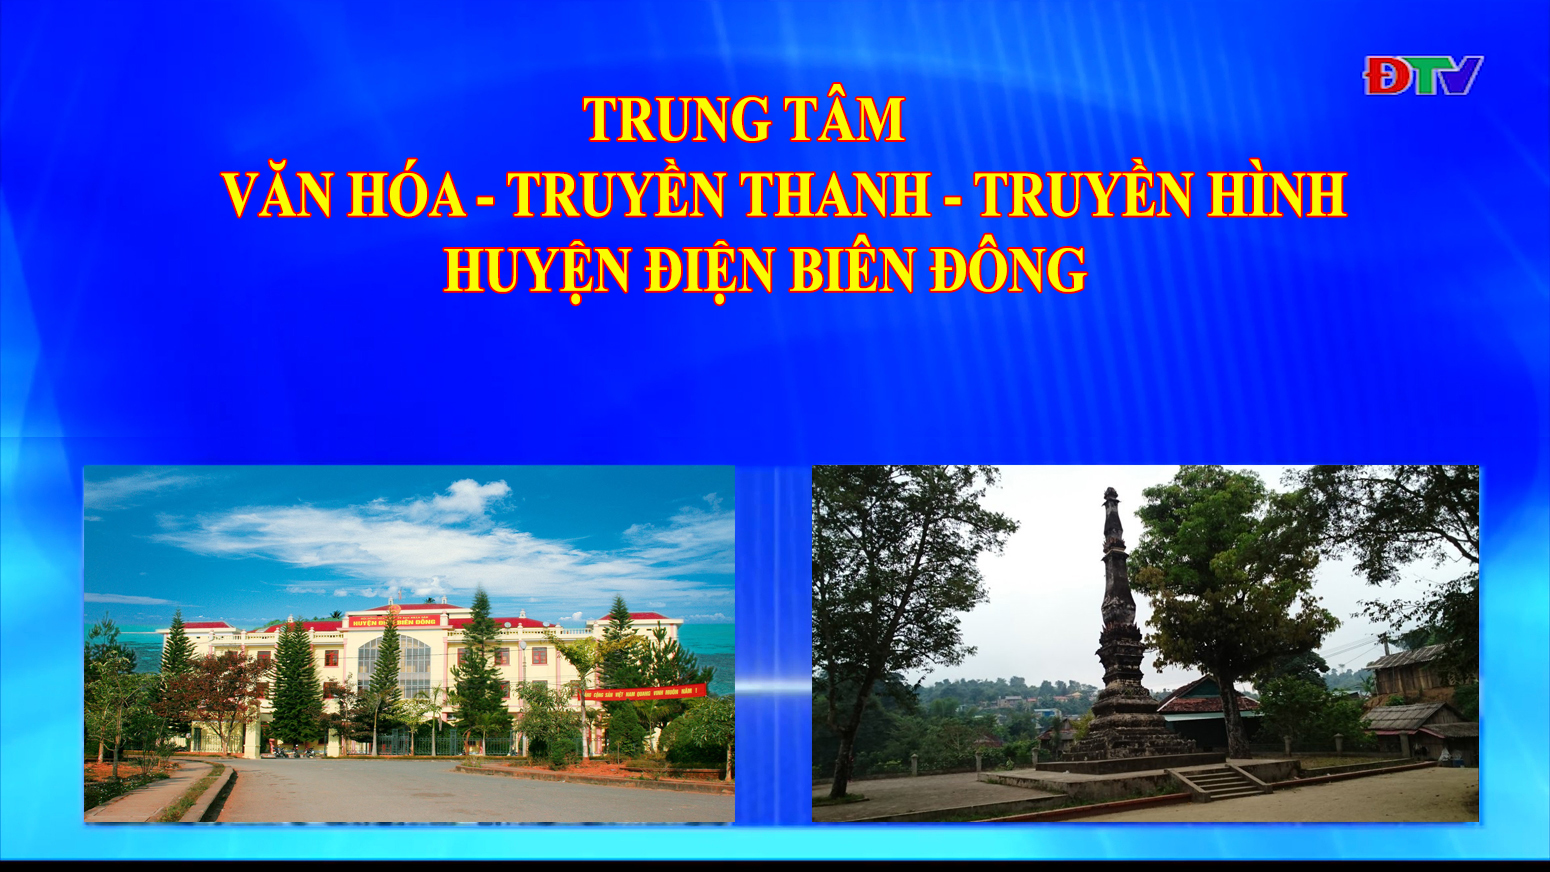 Trung tâm VH-TTTH huyện Điện Biên Đông (Ngày 3-7-2021)